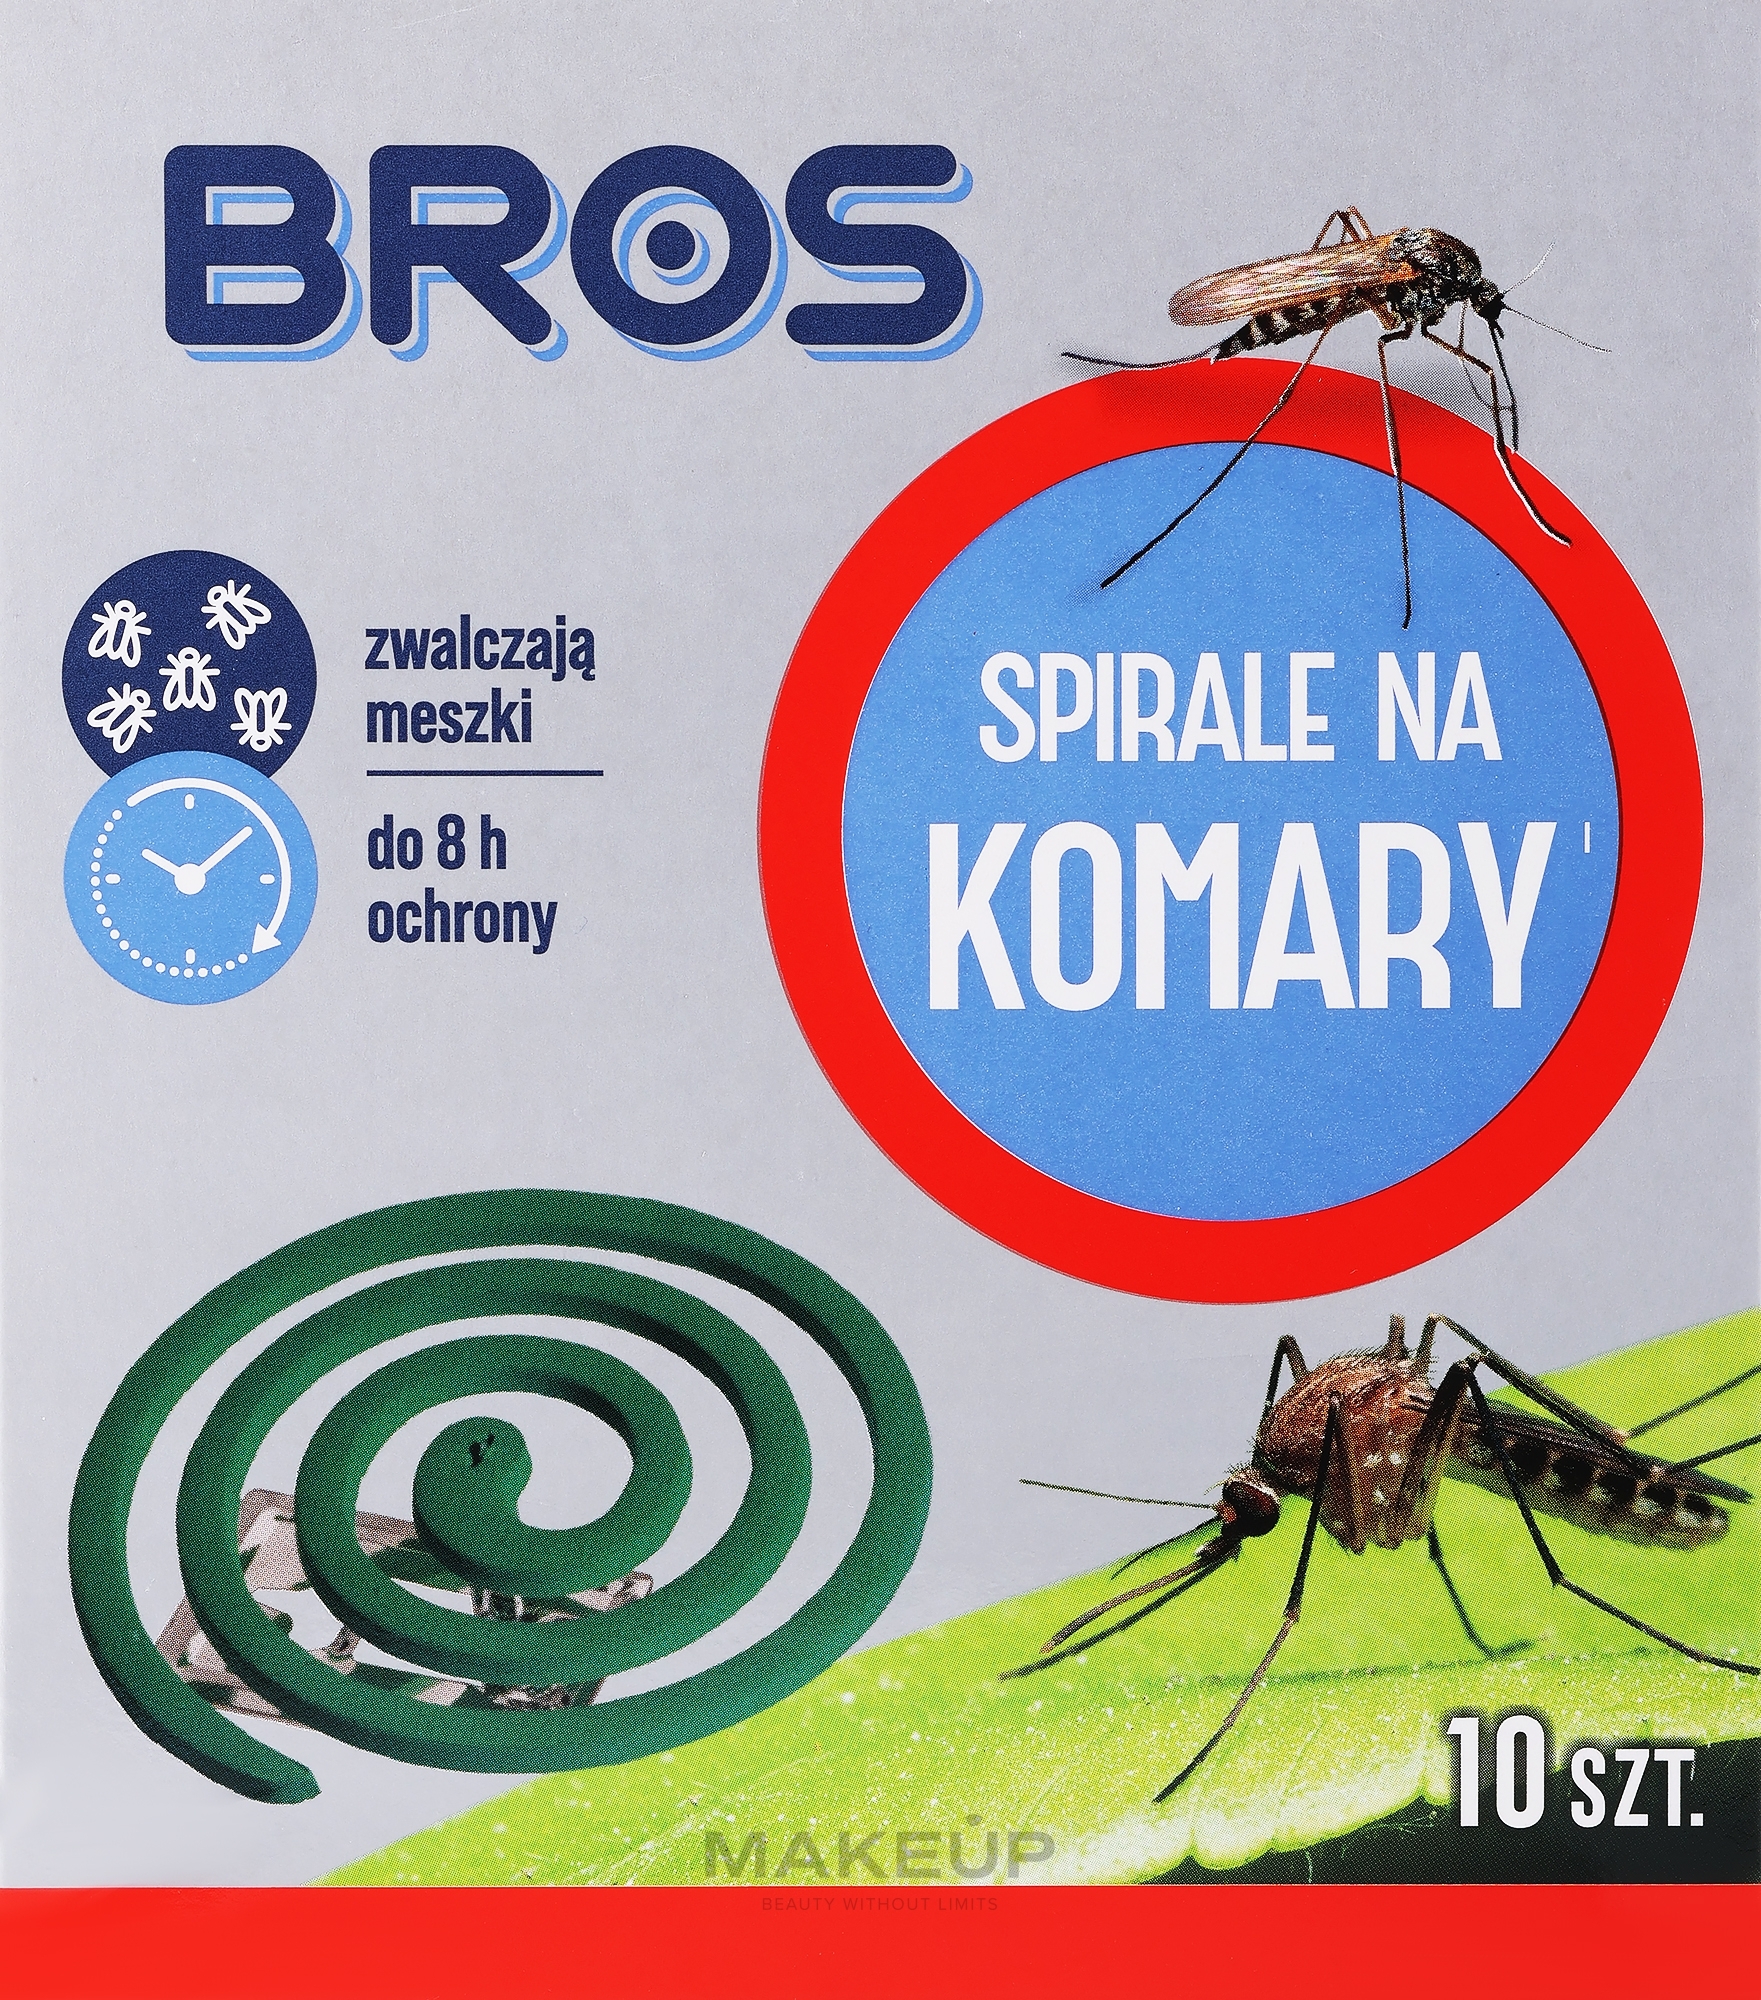 Инсектицидная спираль от комаров - Bros — фото 10шт